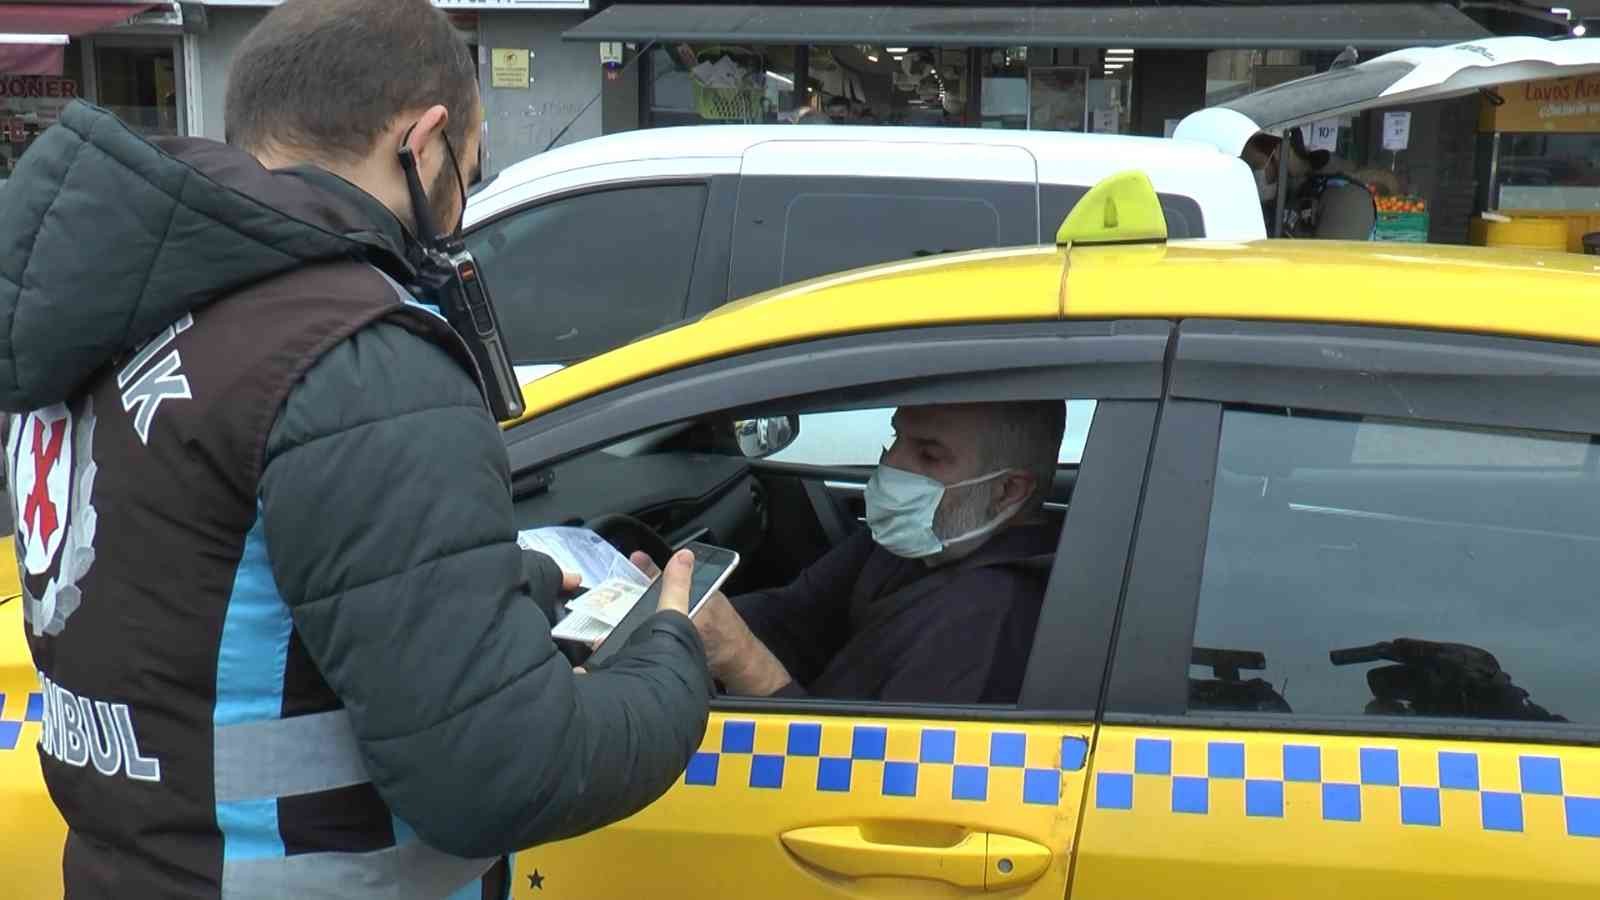 Kadıköy’de taksi denetiminde emniyet kemeri cezası #istanbul